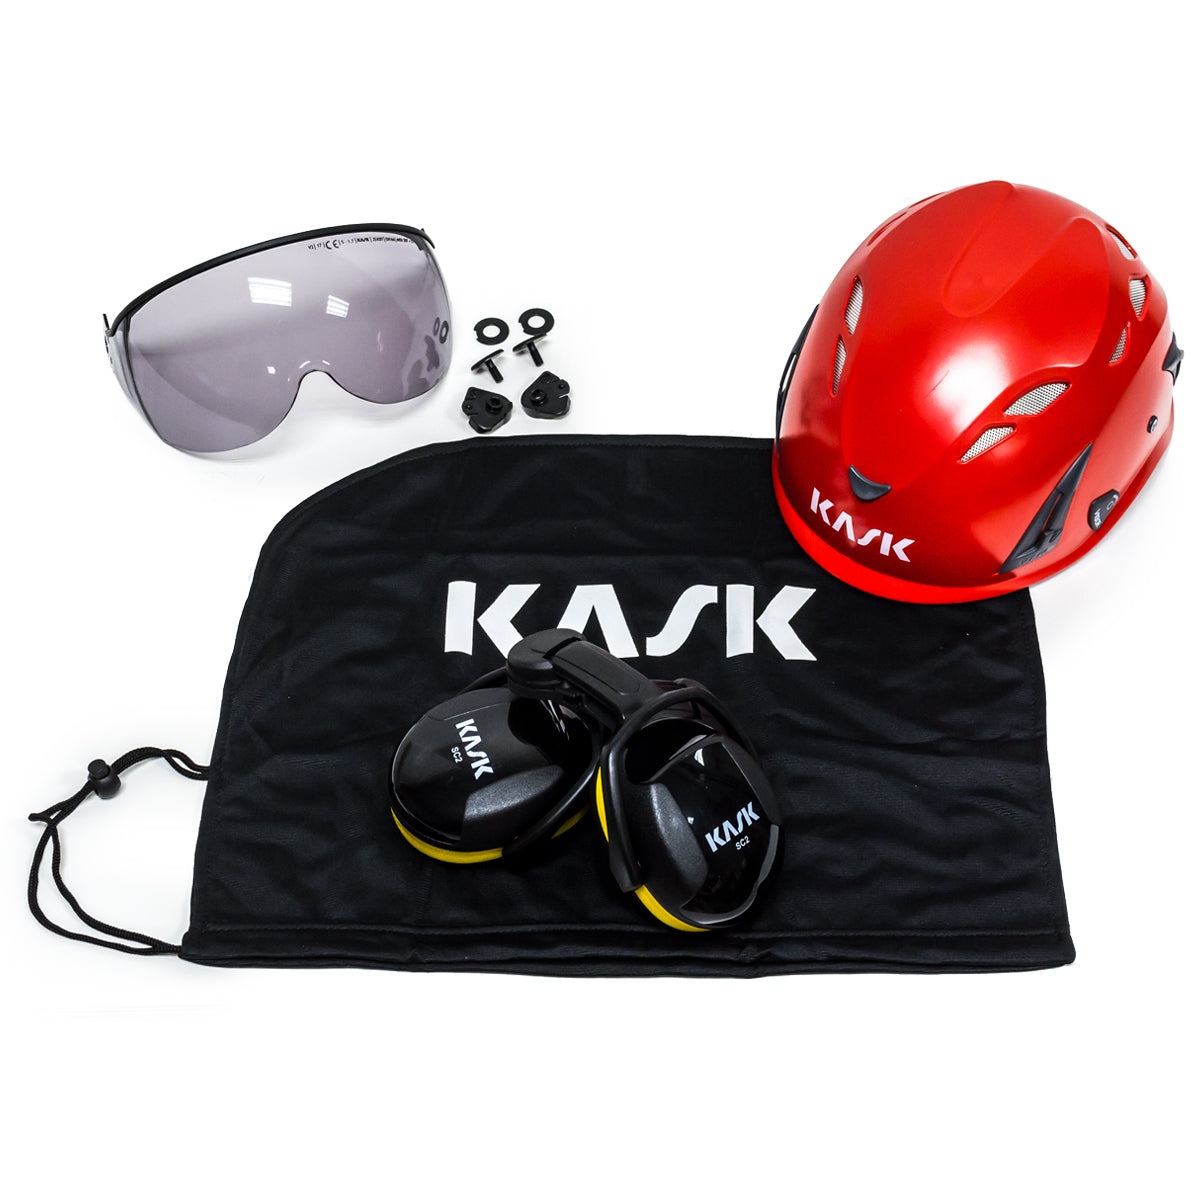 Kask Professional Arborist Red Super Plasma Helmet Kit